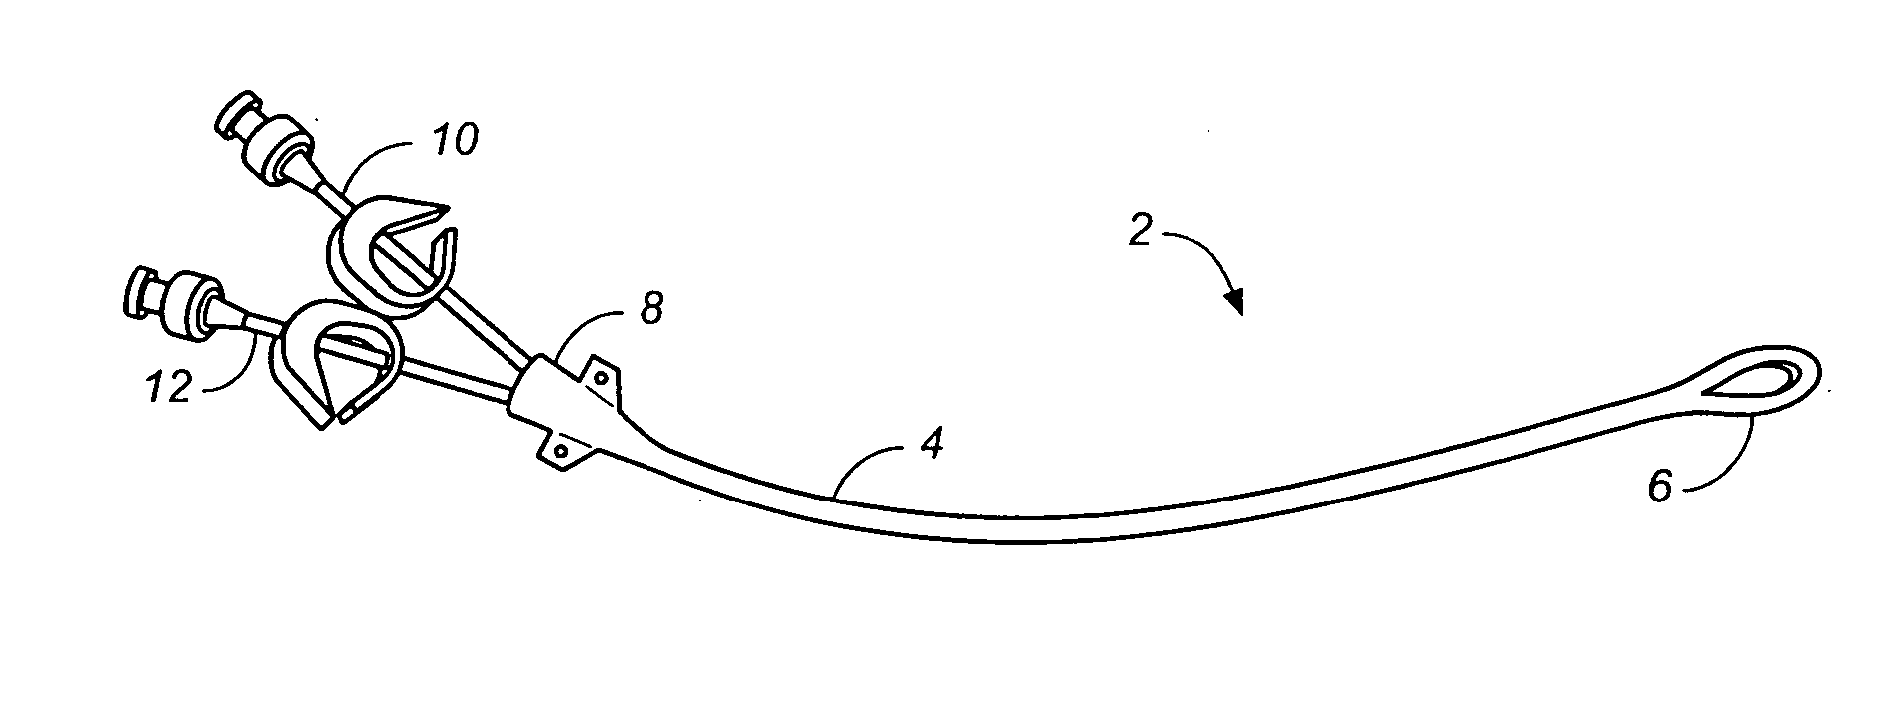 Loop-tip catheter